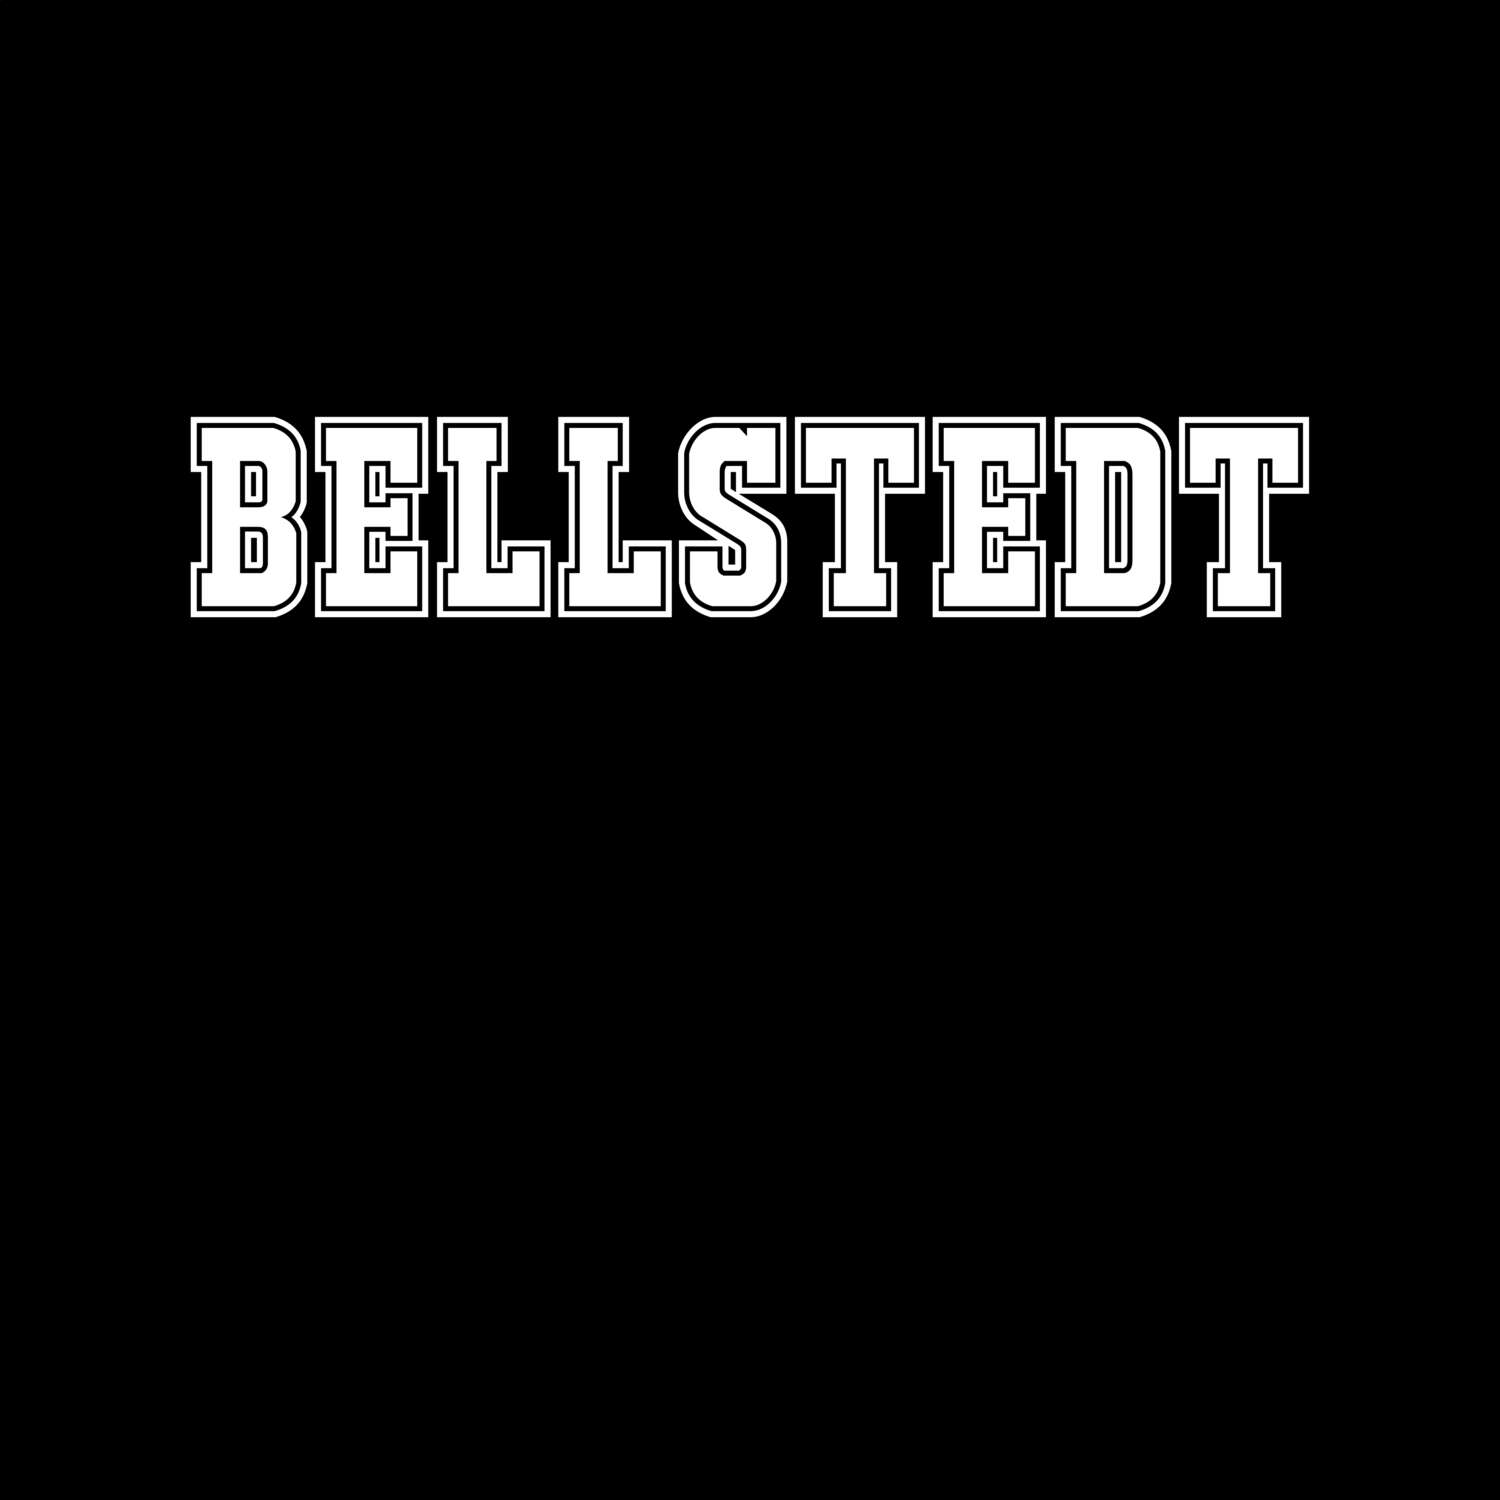 Bellstedt T-Shirt »Classic«